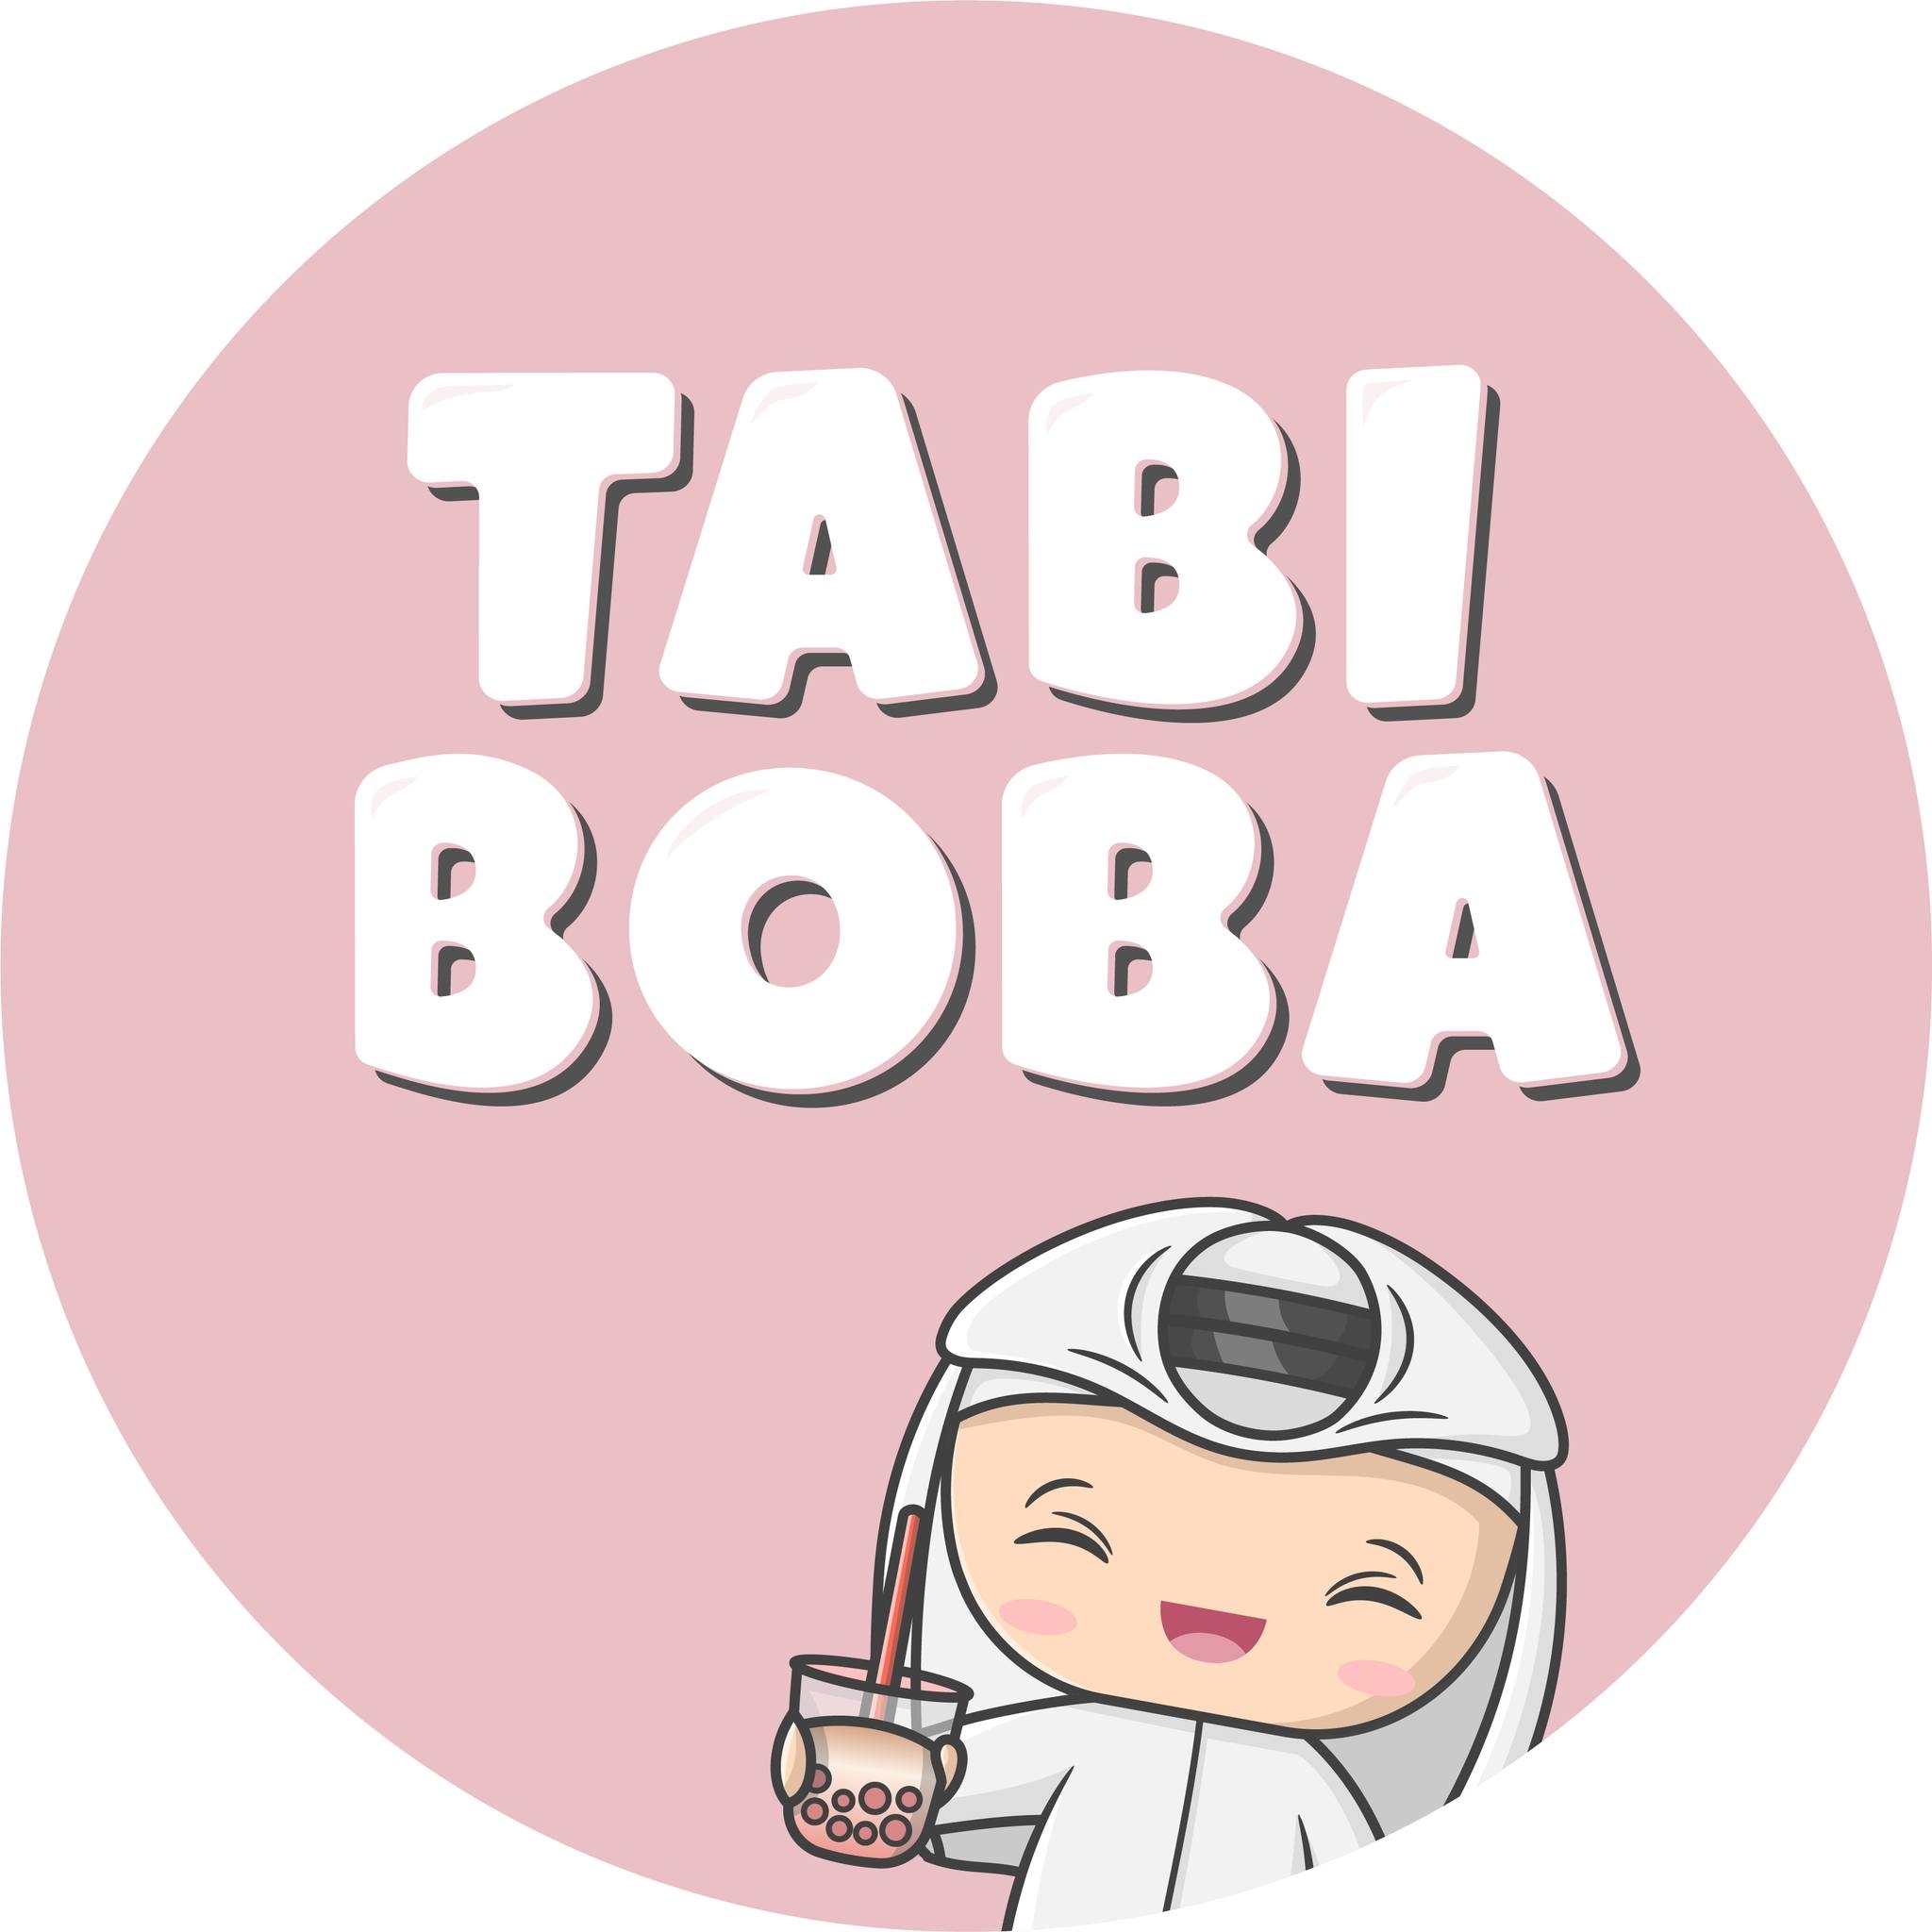 تبي بوبا logo